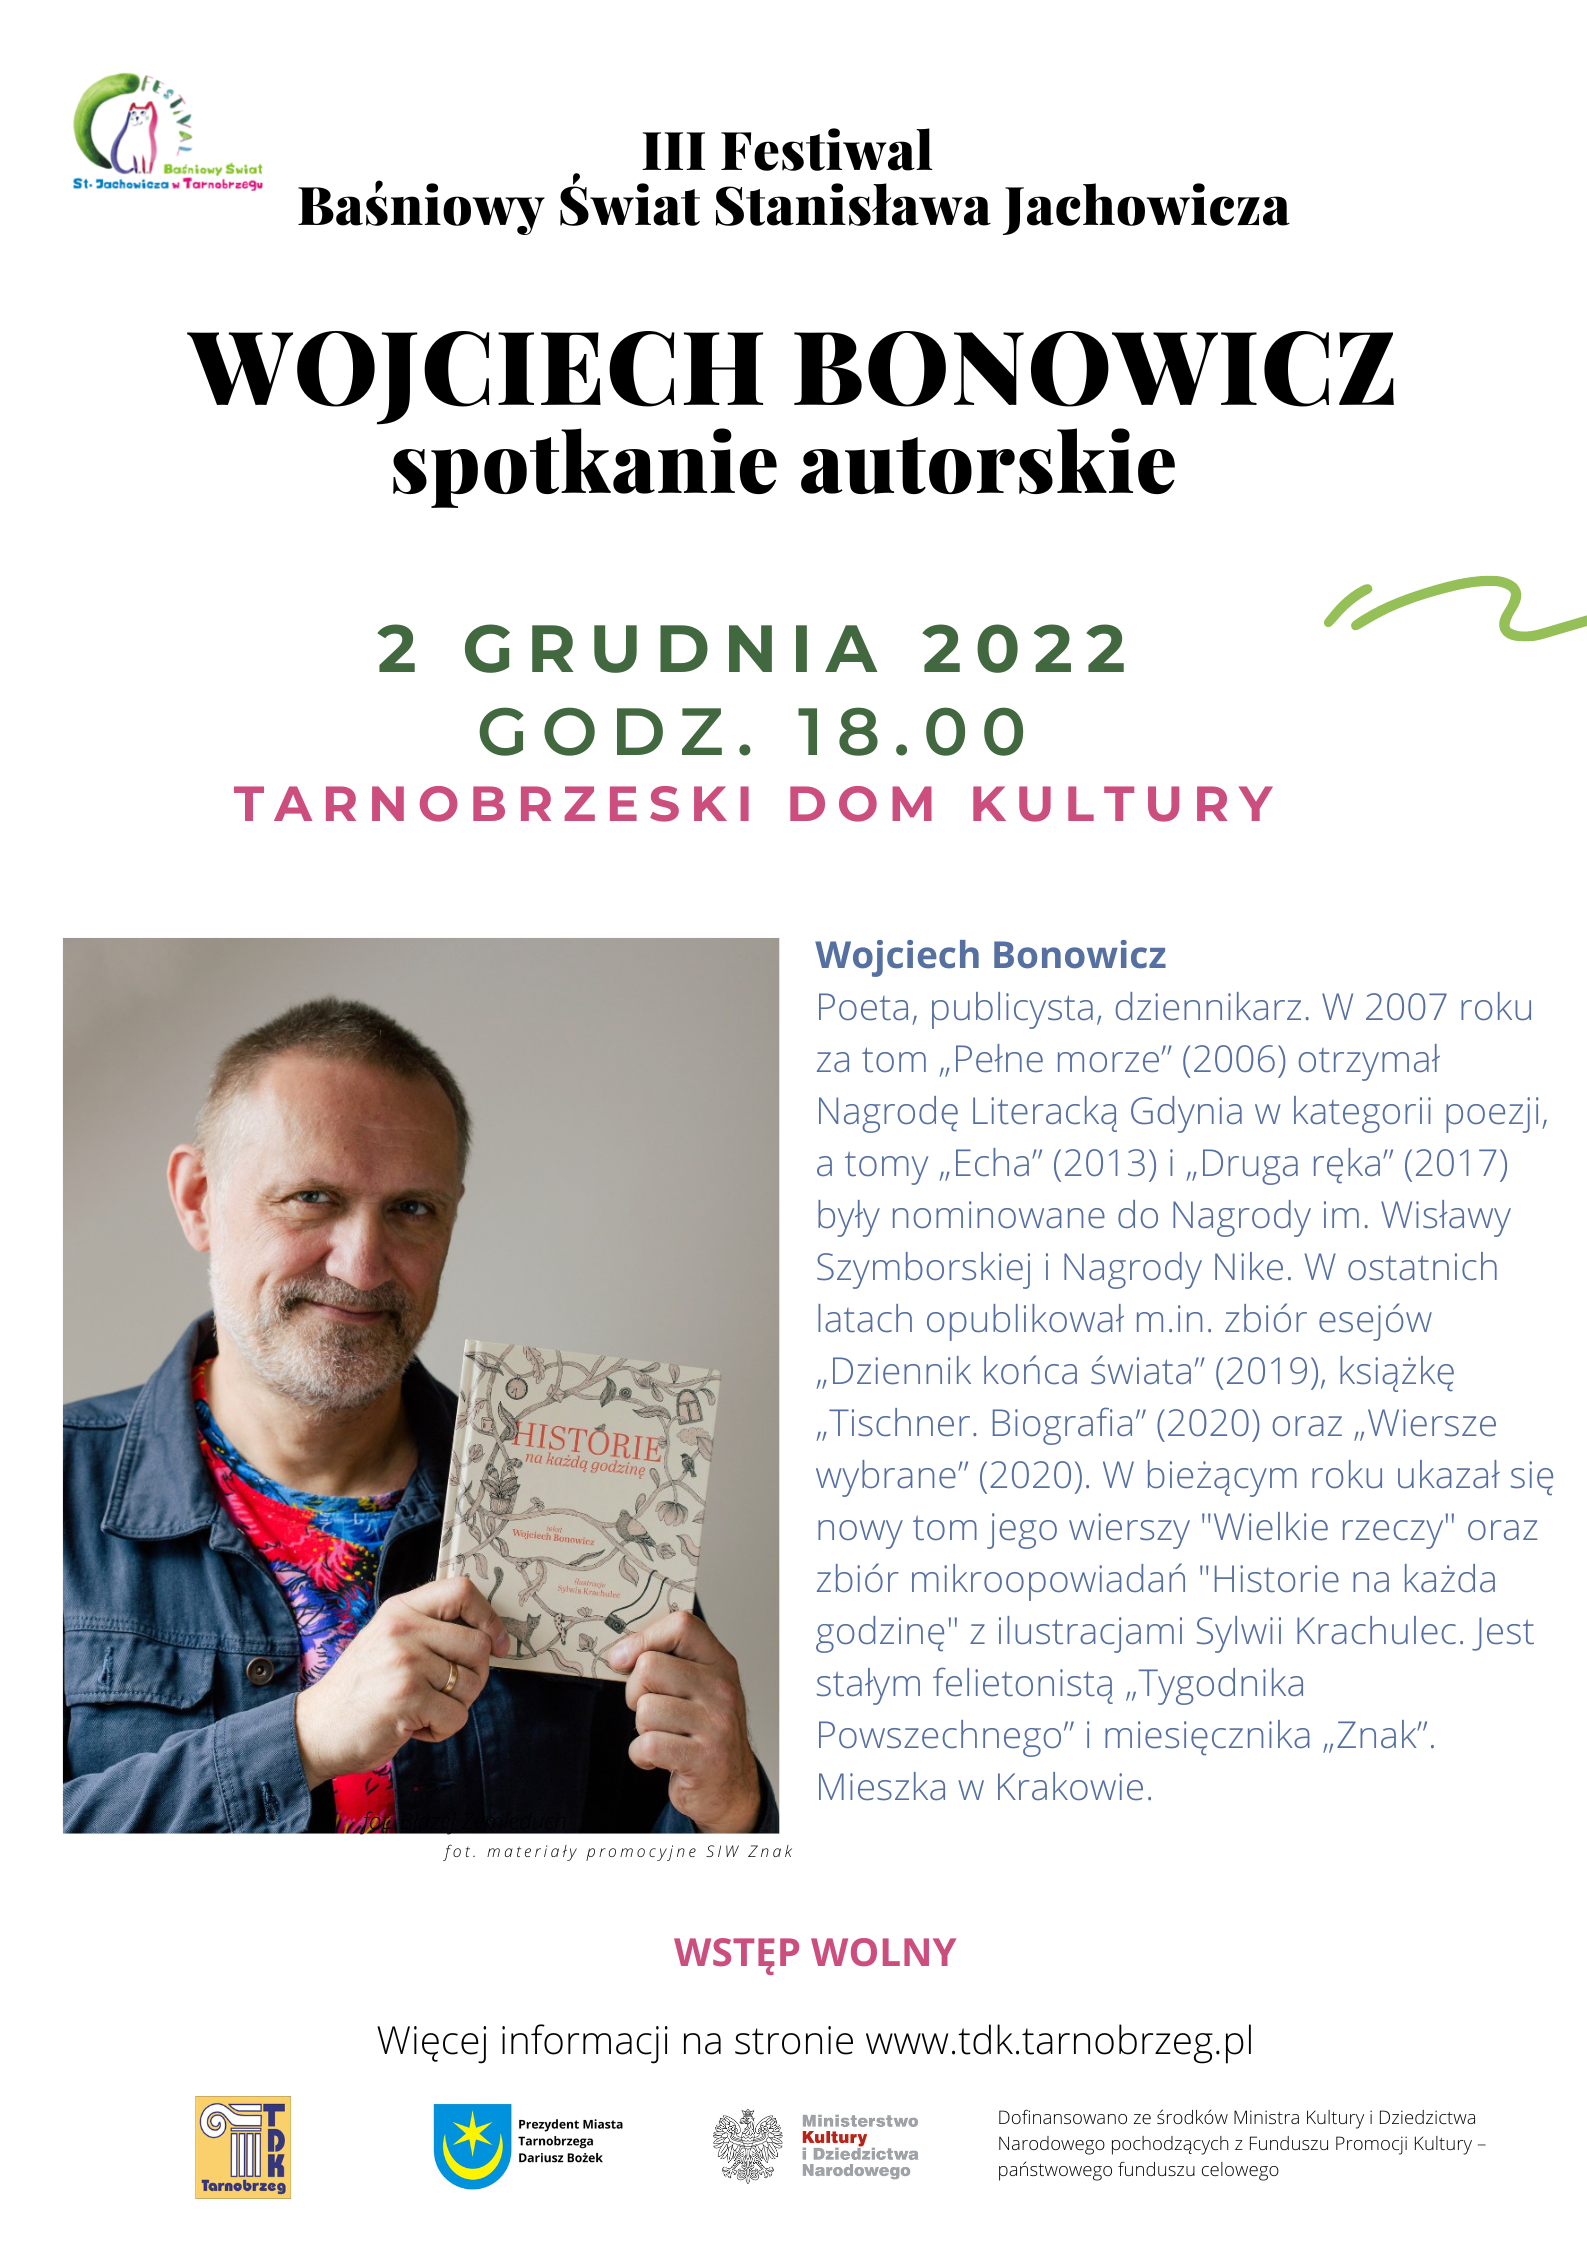 Wojciech Bonowicz będzie gościem III Festiwalu Baśniowy Świat Stanisława Jachowicza.